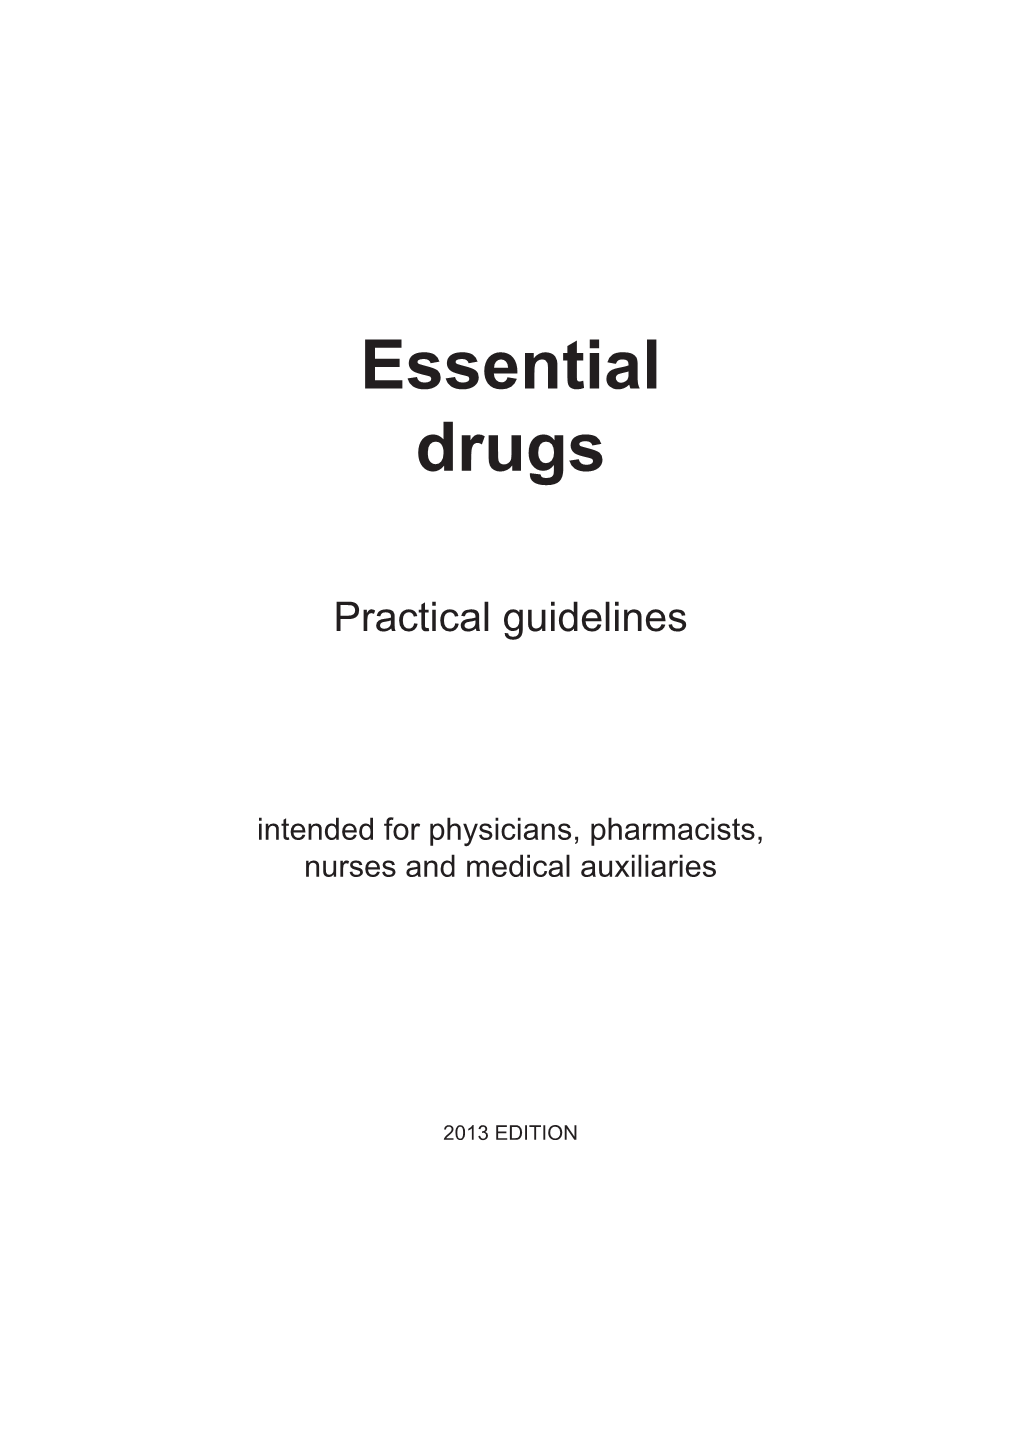 Essential Drugs